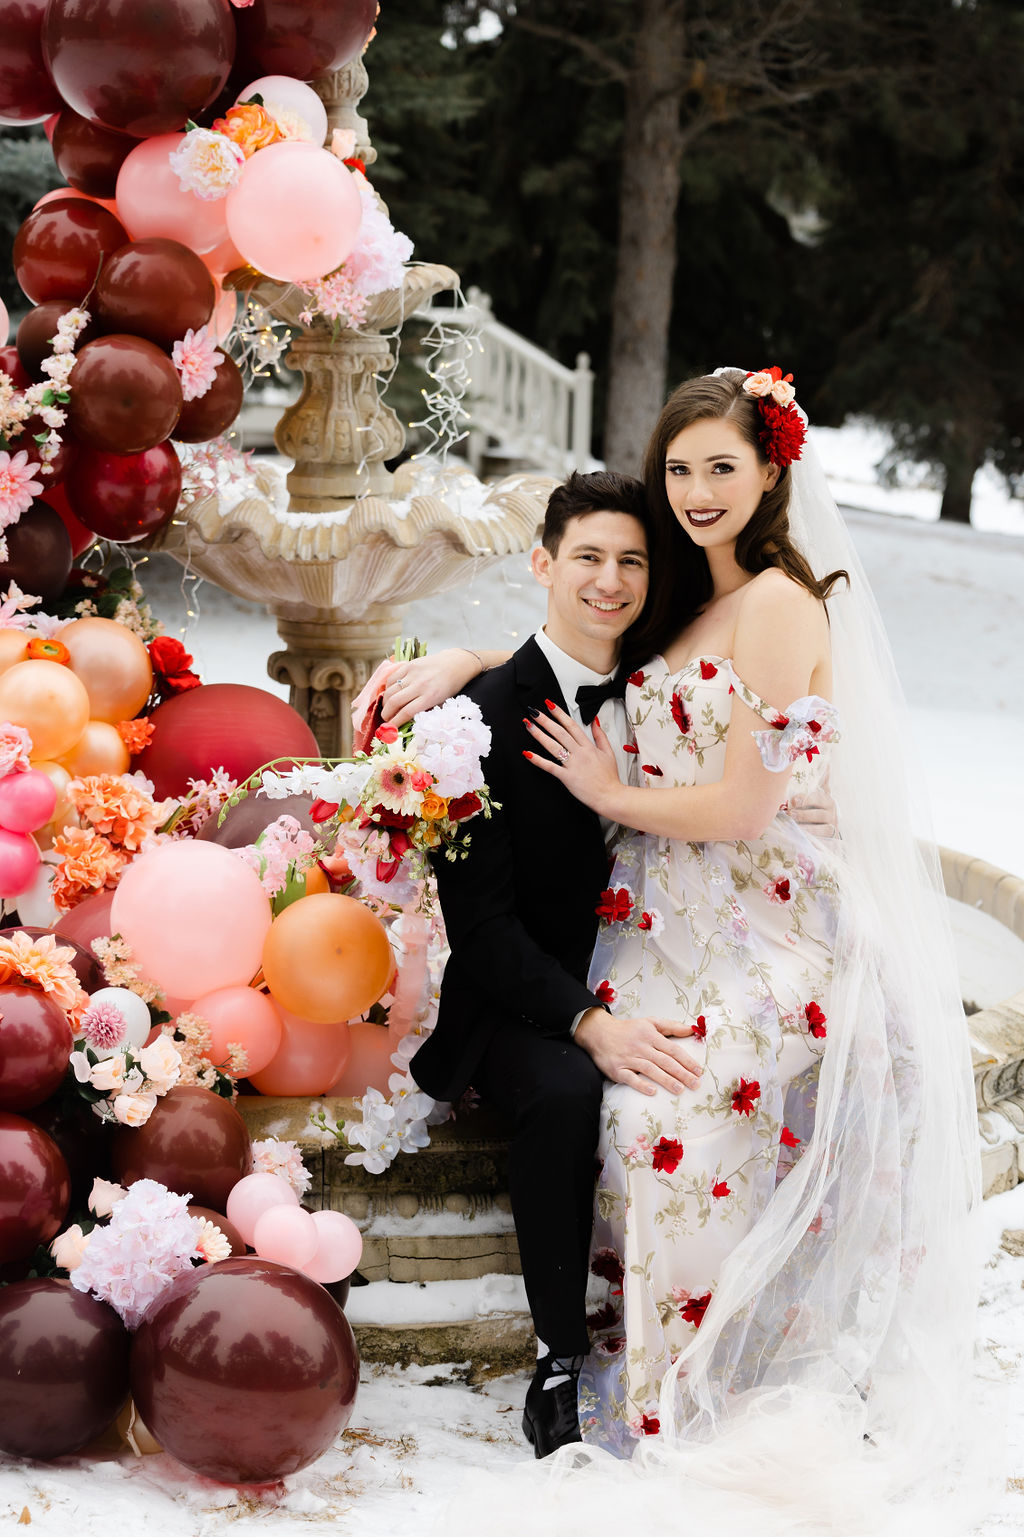 Destination Valentine's Wedding With Floral Wedding Dress